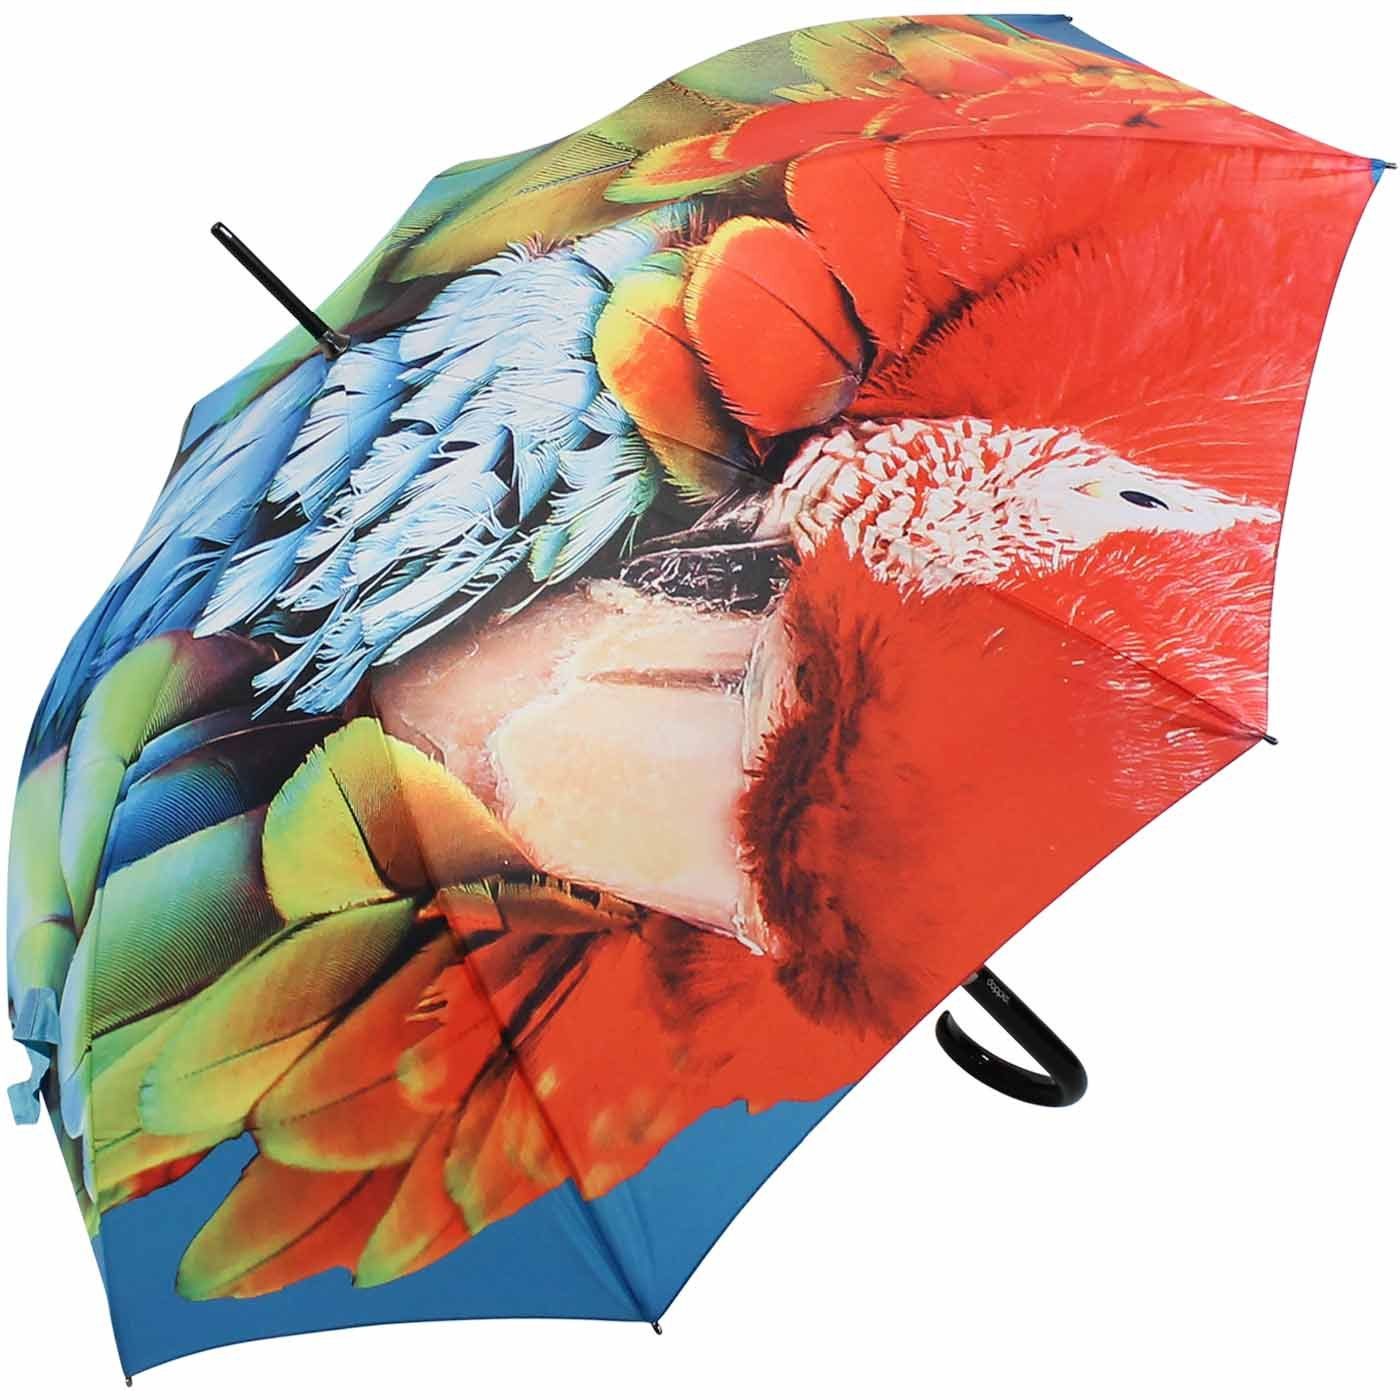 Griff modern formschönem edler doppler® Langregenschirm Regenschirm mit Druck mit auffälliger Auf-Automatik Art,